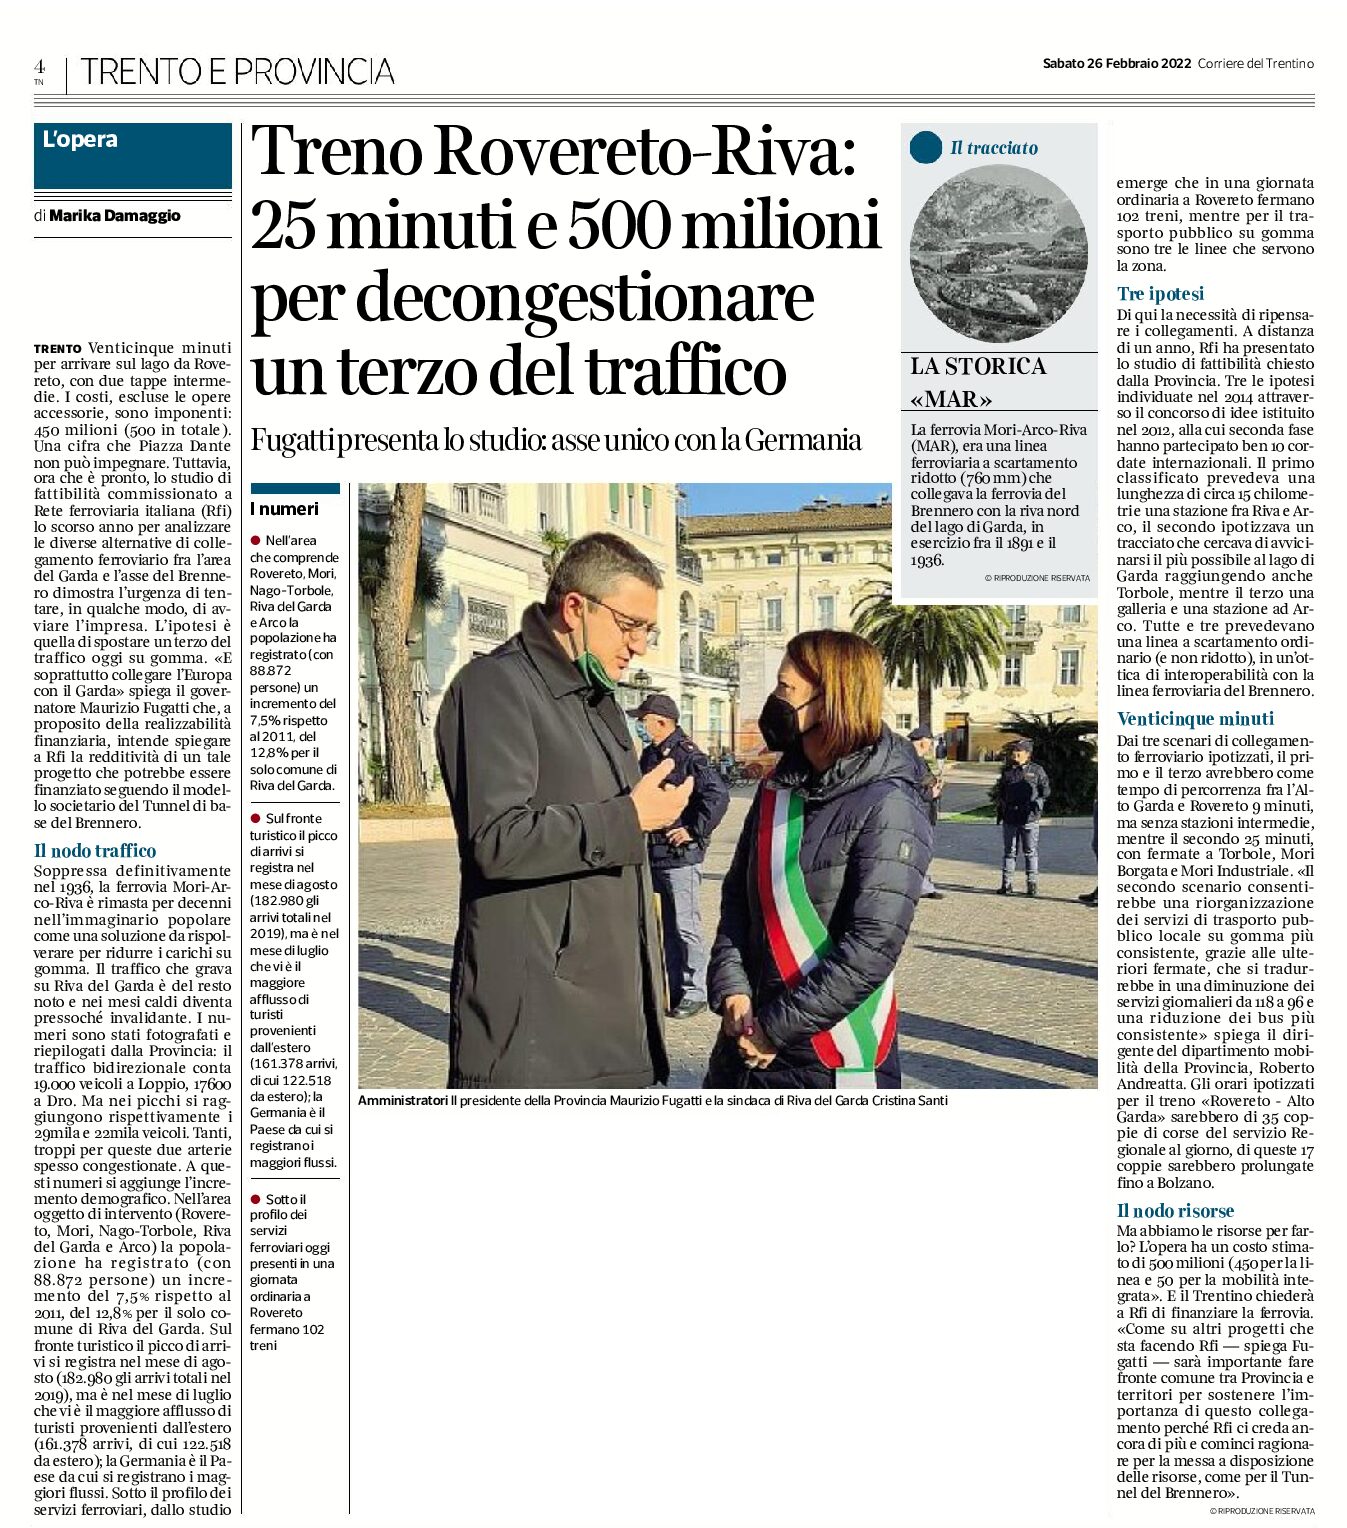 Treno Rovereto-Riva: 25 minuti e 500 milioni per decongestionare un terzo del traffico